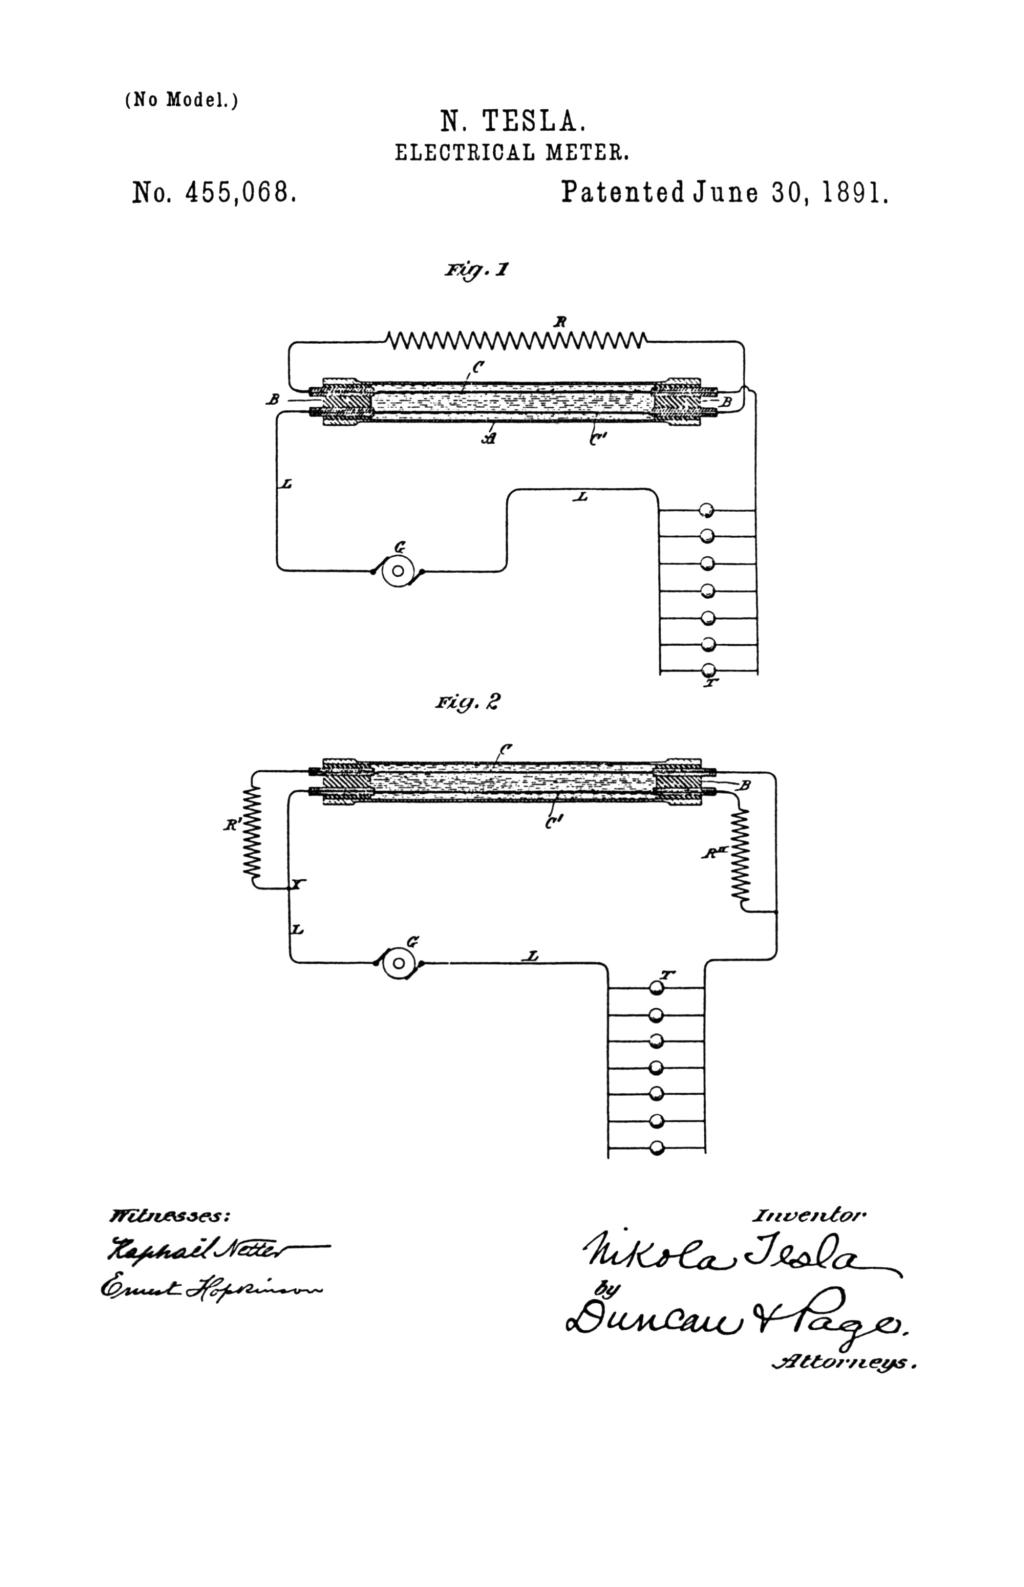 Nikola Tesla U.S. Patent 455,068 - Electrical Meter - Image 1